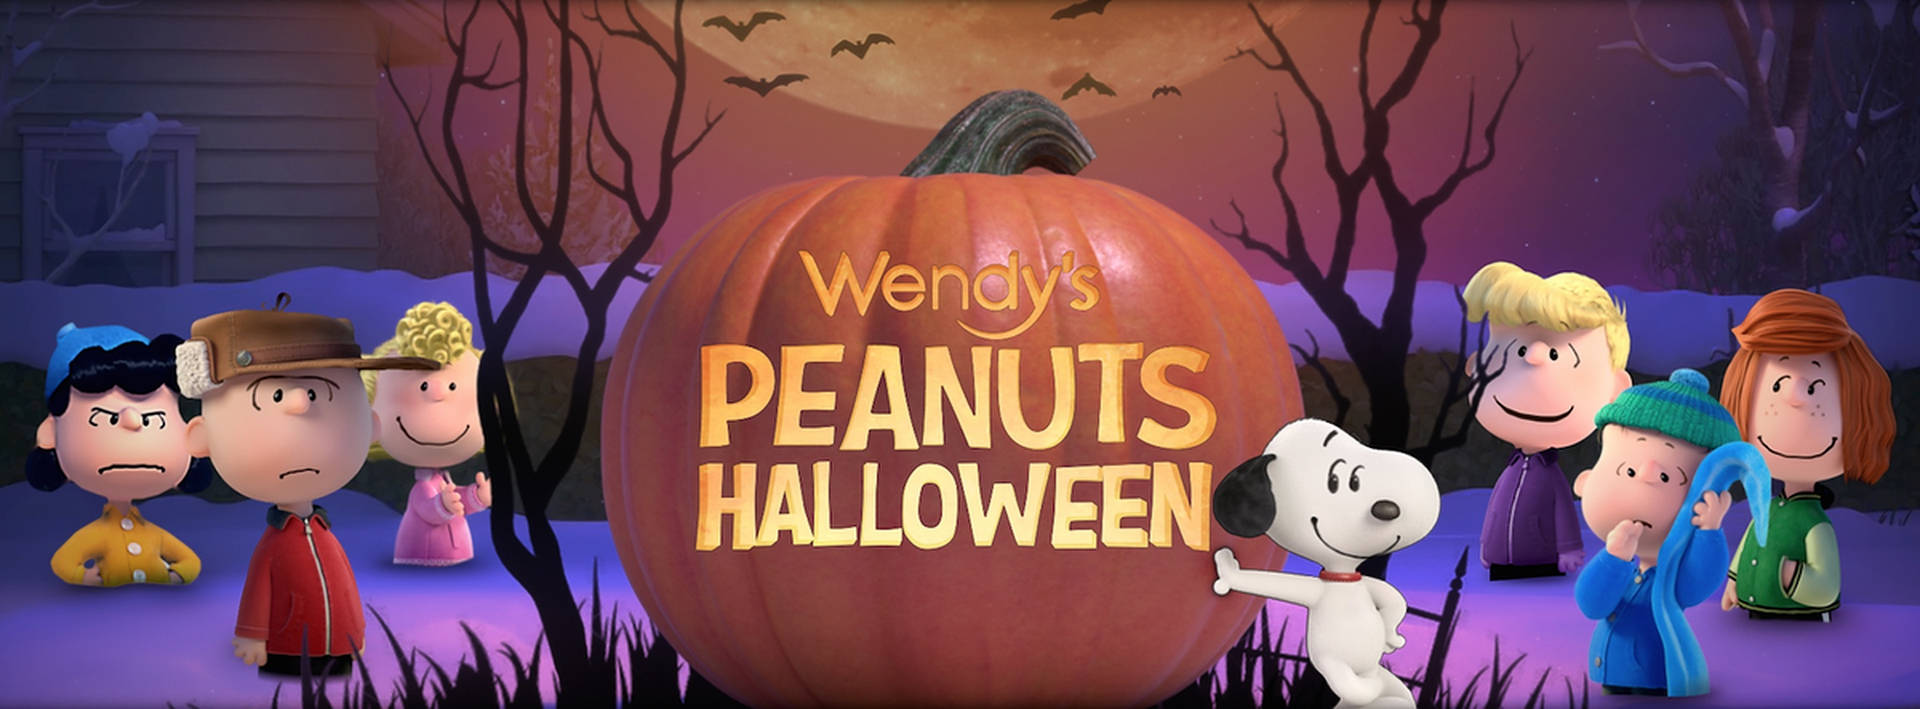 Charlie Brown Wendy’s Peanuts Halloween Wallpaper